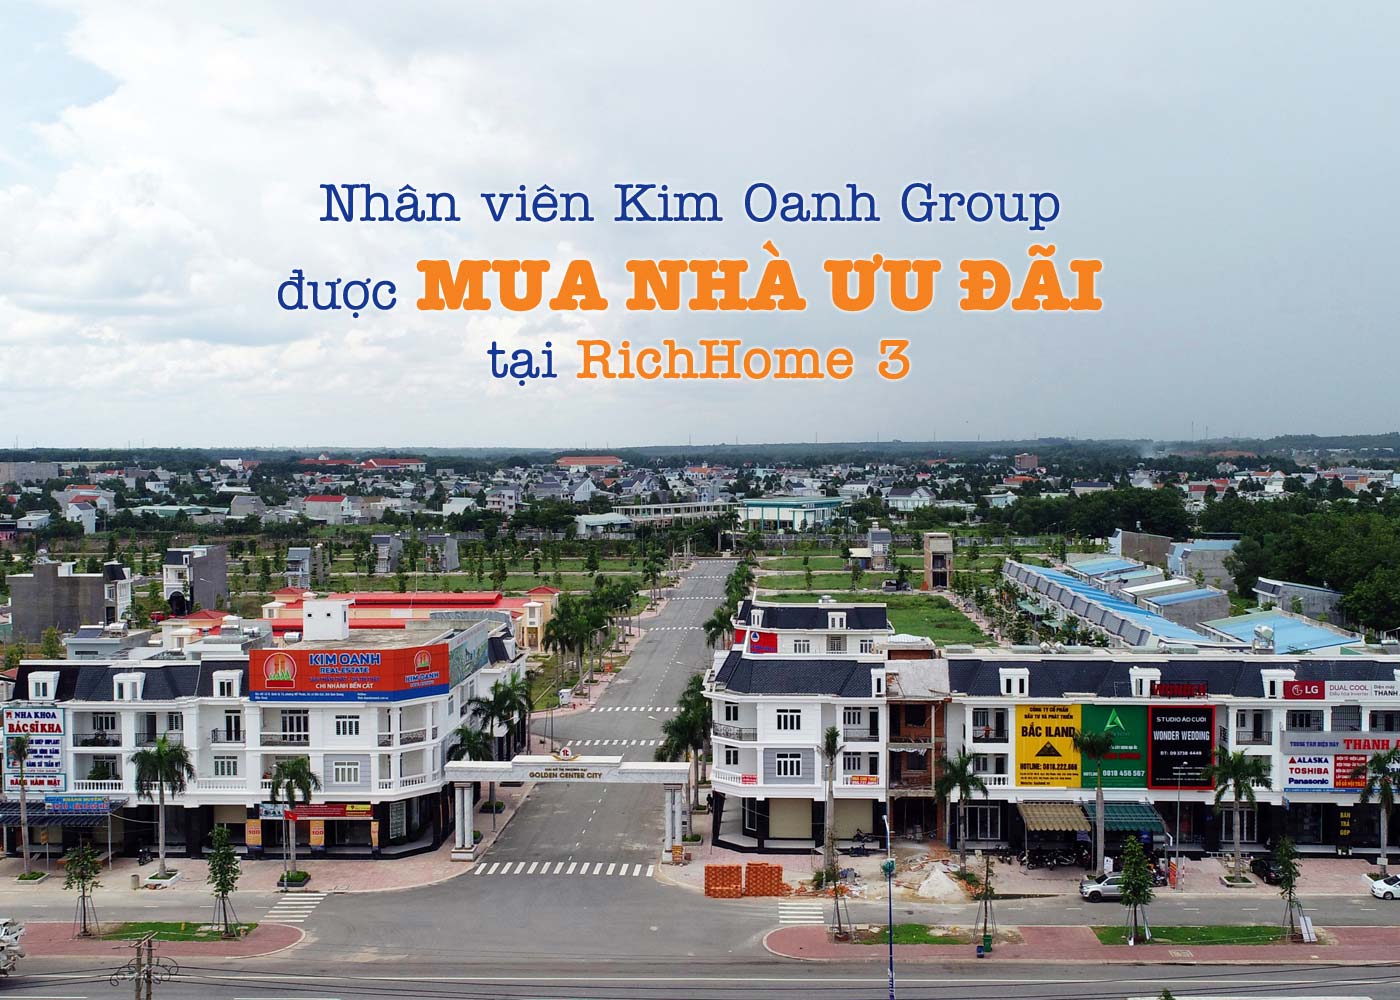 Nhân viên Kim Oanh Group được mua nhà ưu đãi tại RichHome 3 - ảnh 1